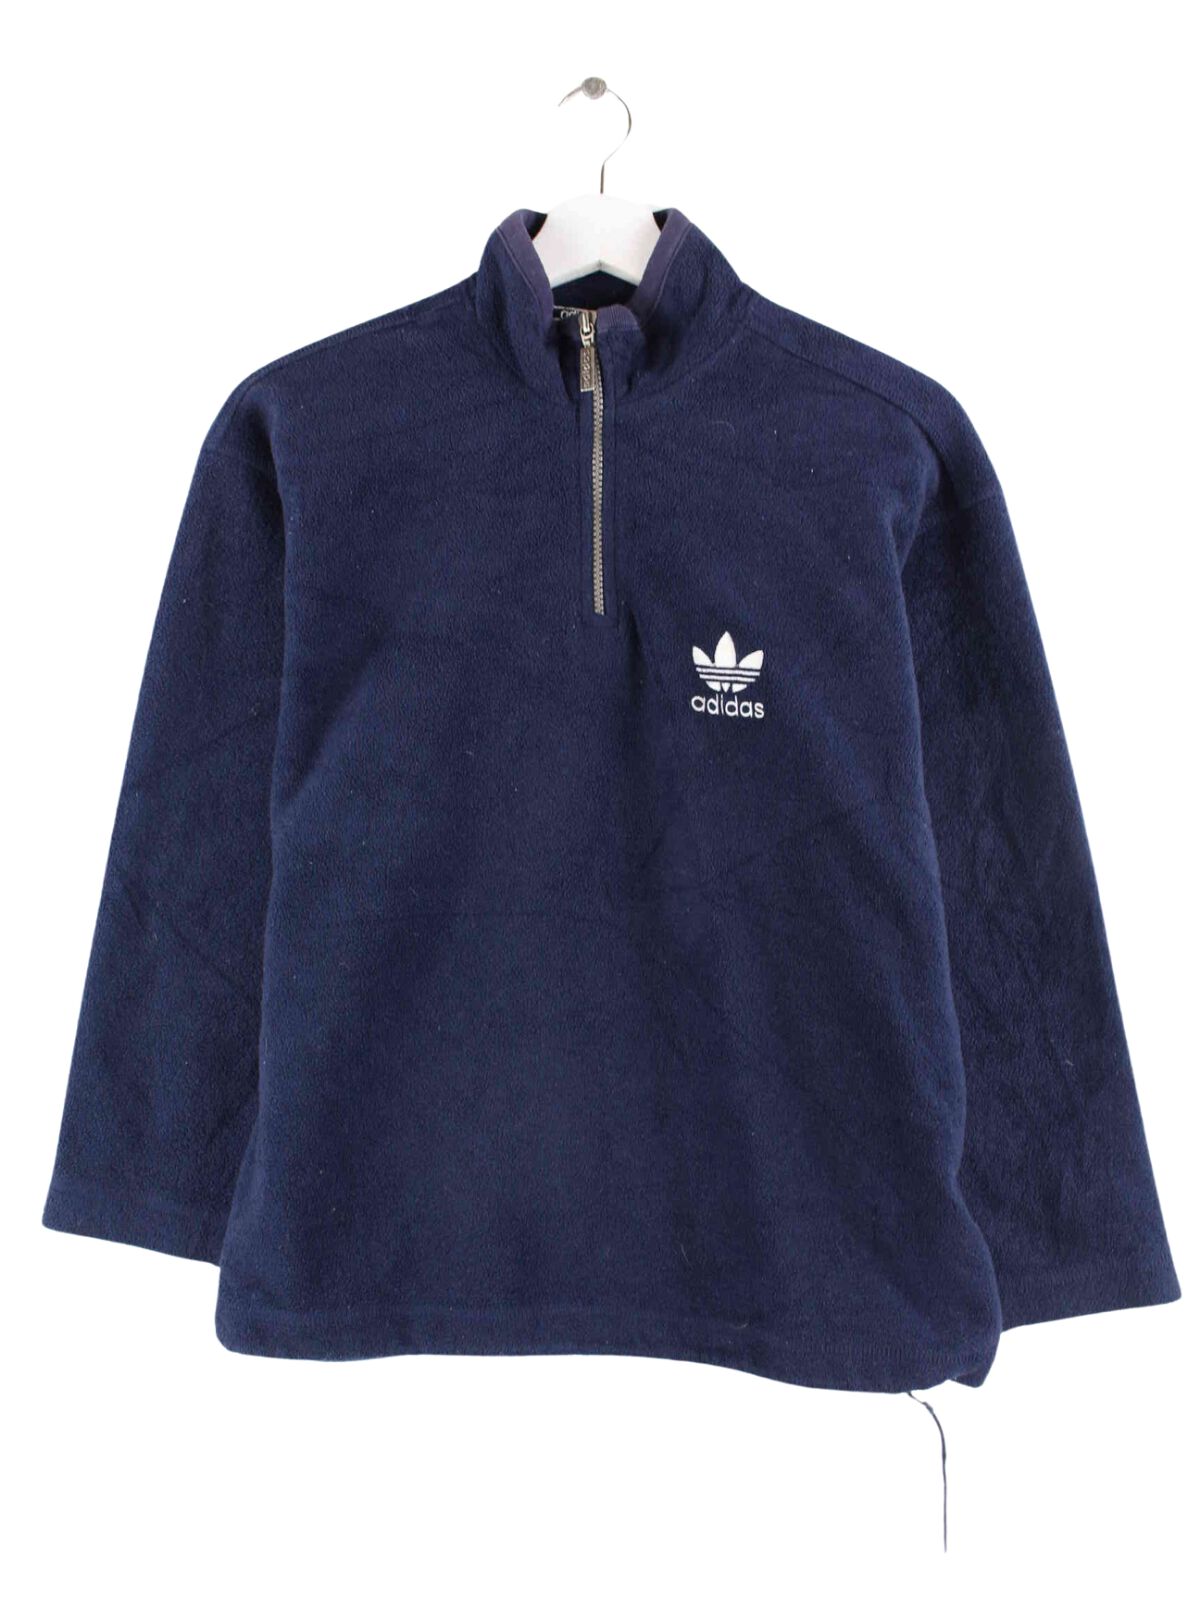 Adidas Damen 90s Vintage half Zip Fleece Sweater Blau XS (front image)